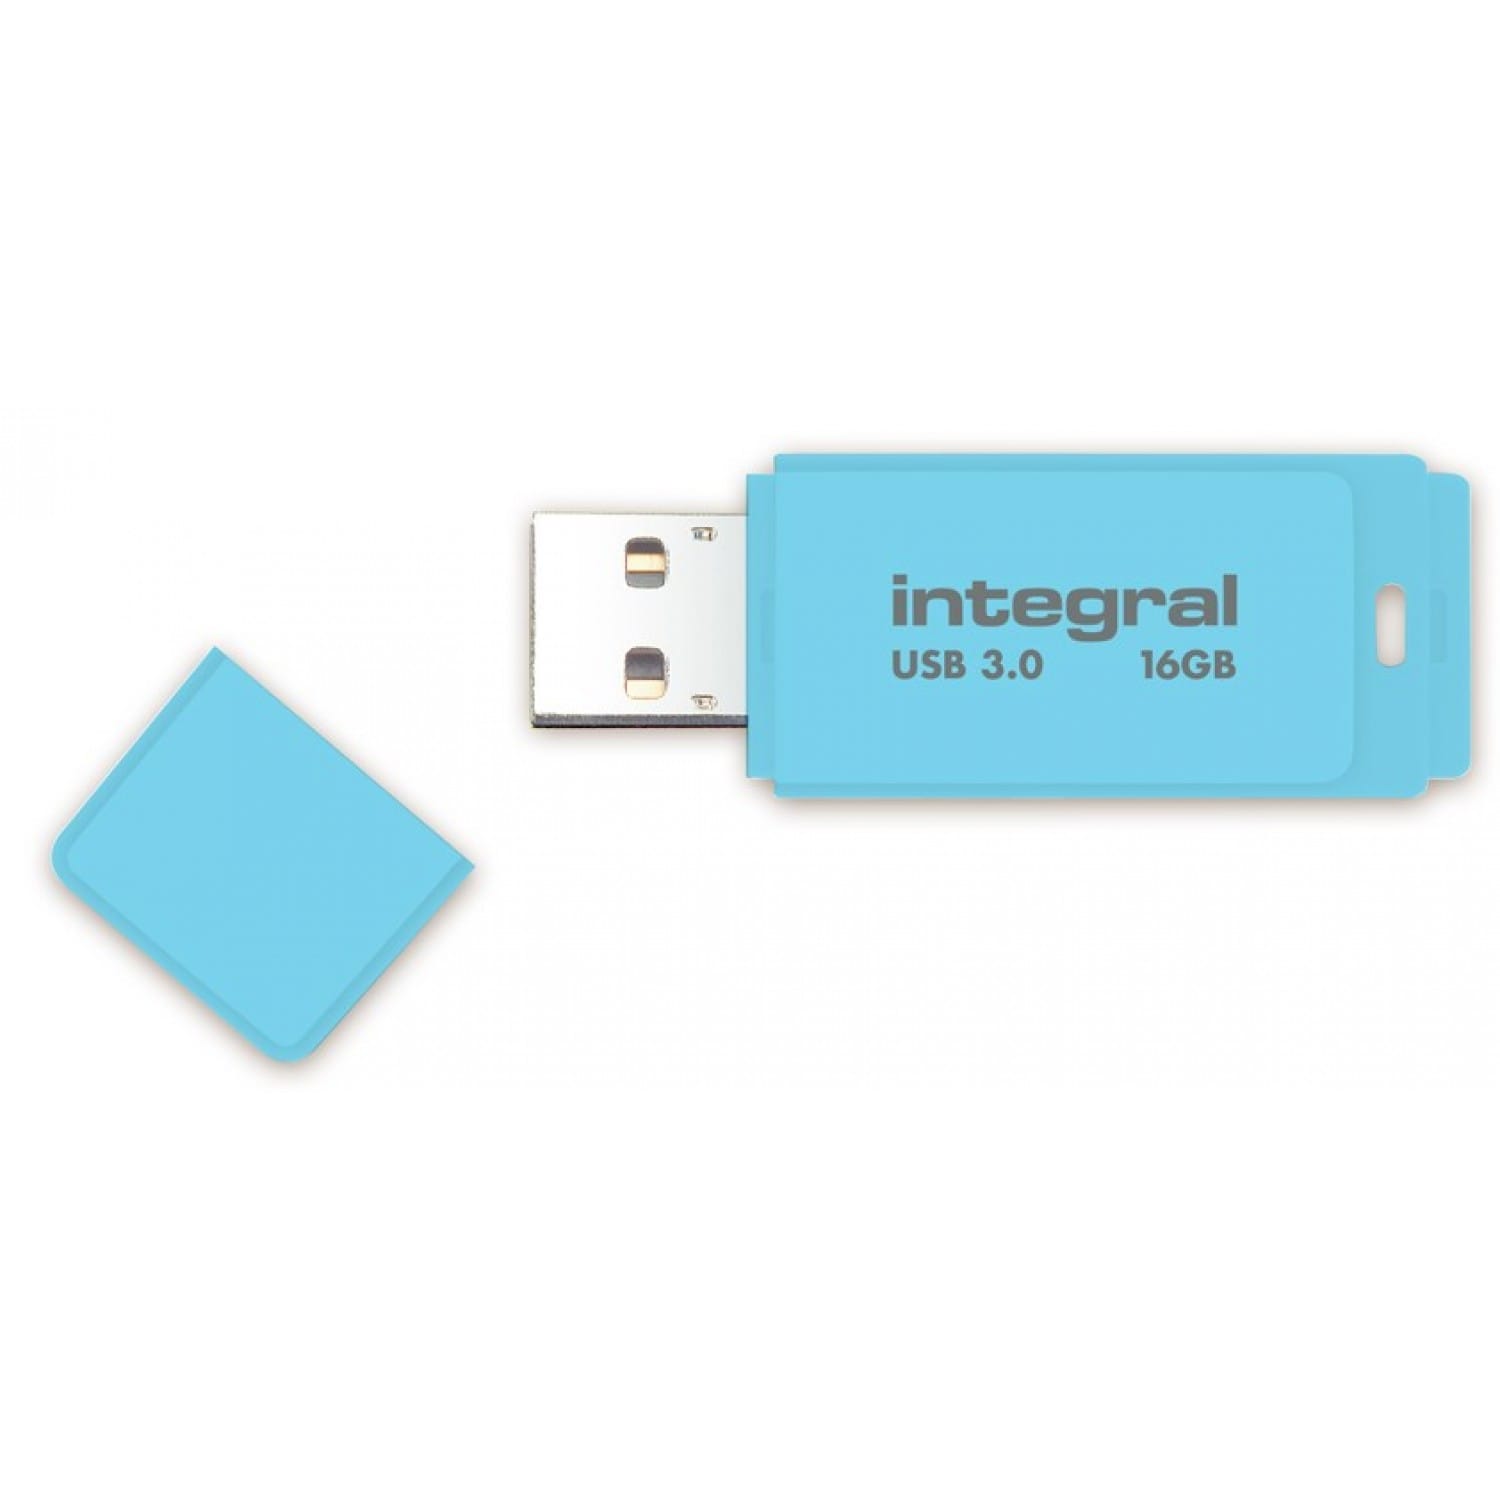 Clé USB, carte SD - Bureau - Tous nos produits